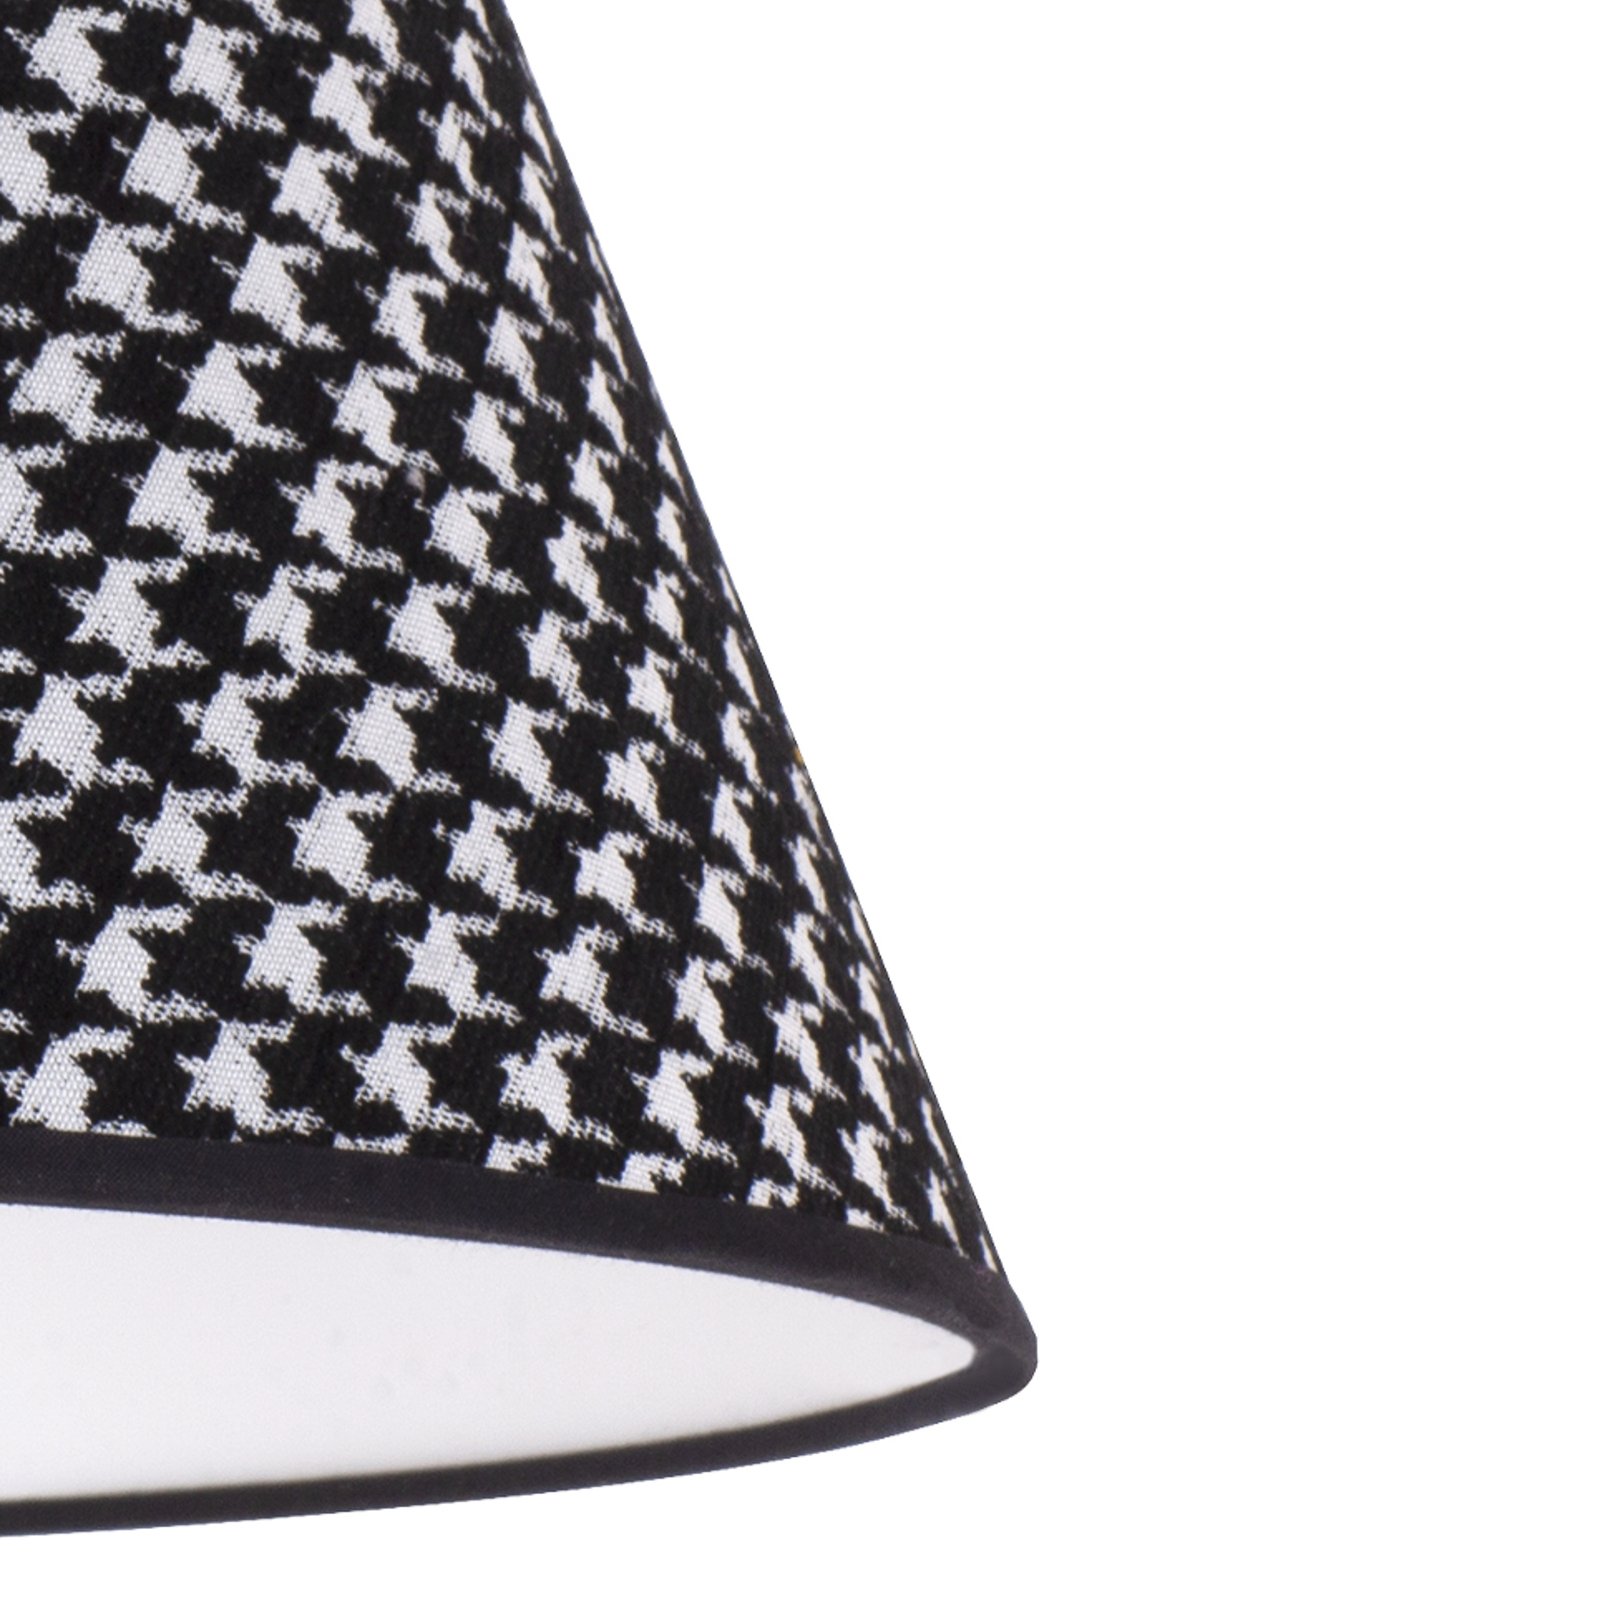 Lámpaernyő Sofia 26cm, vadászkutyás mintázat fekete